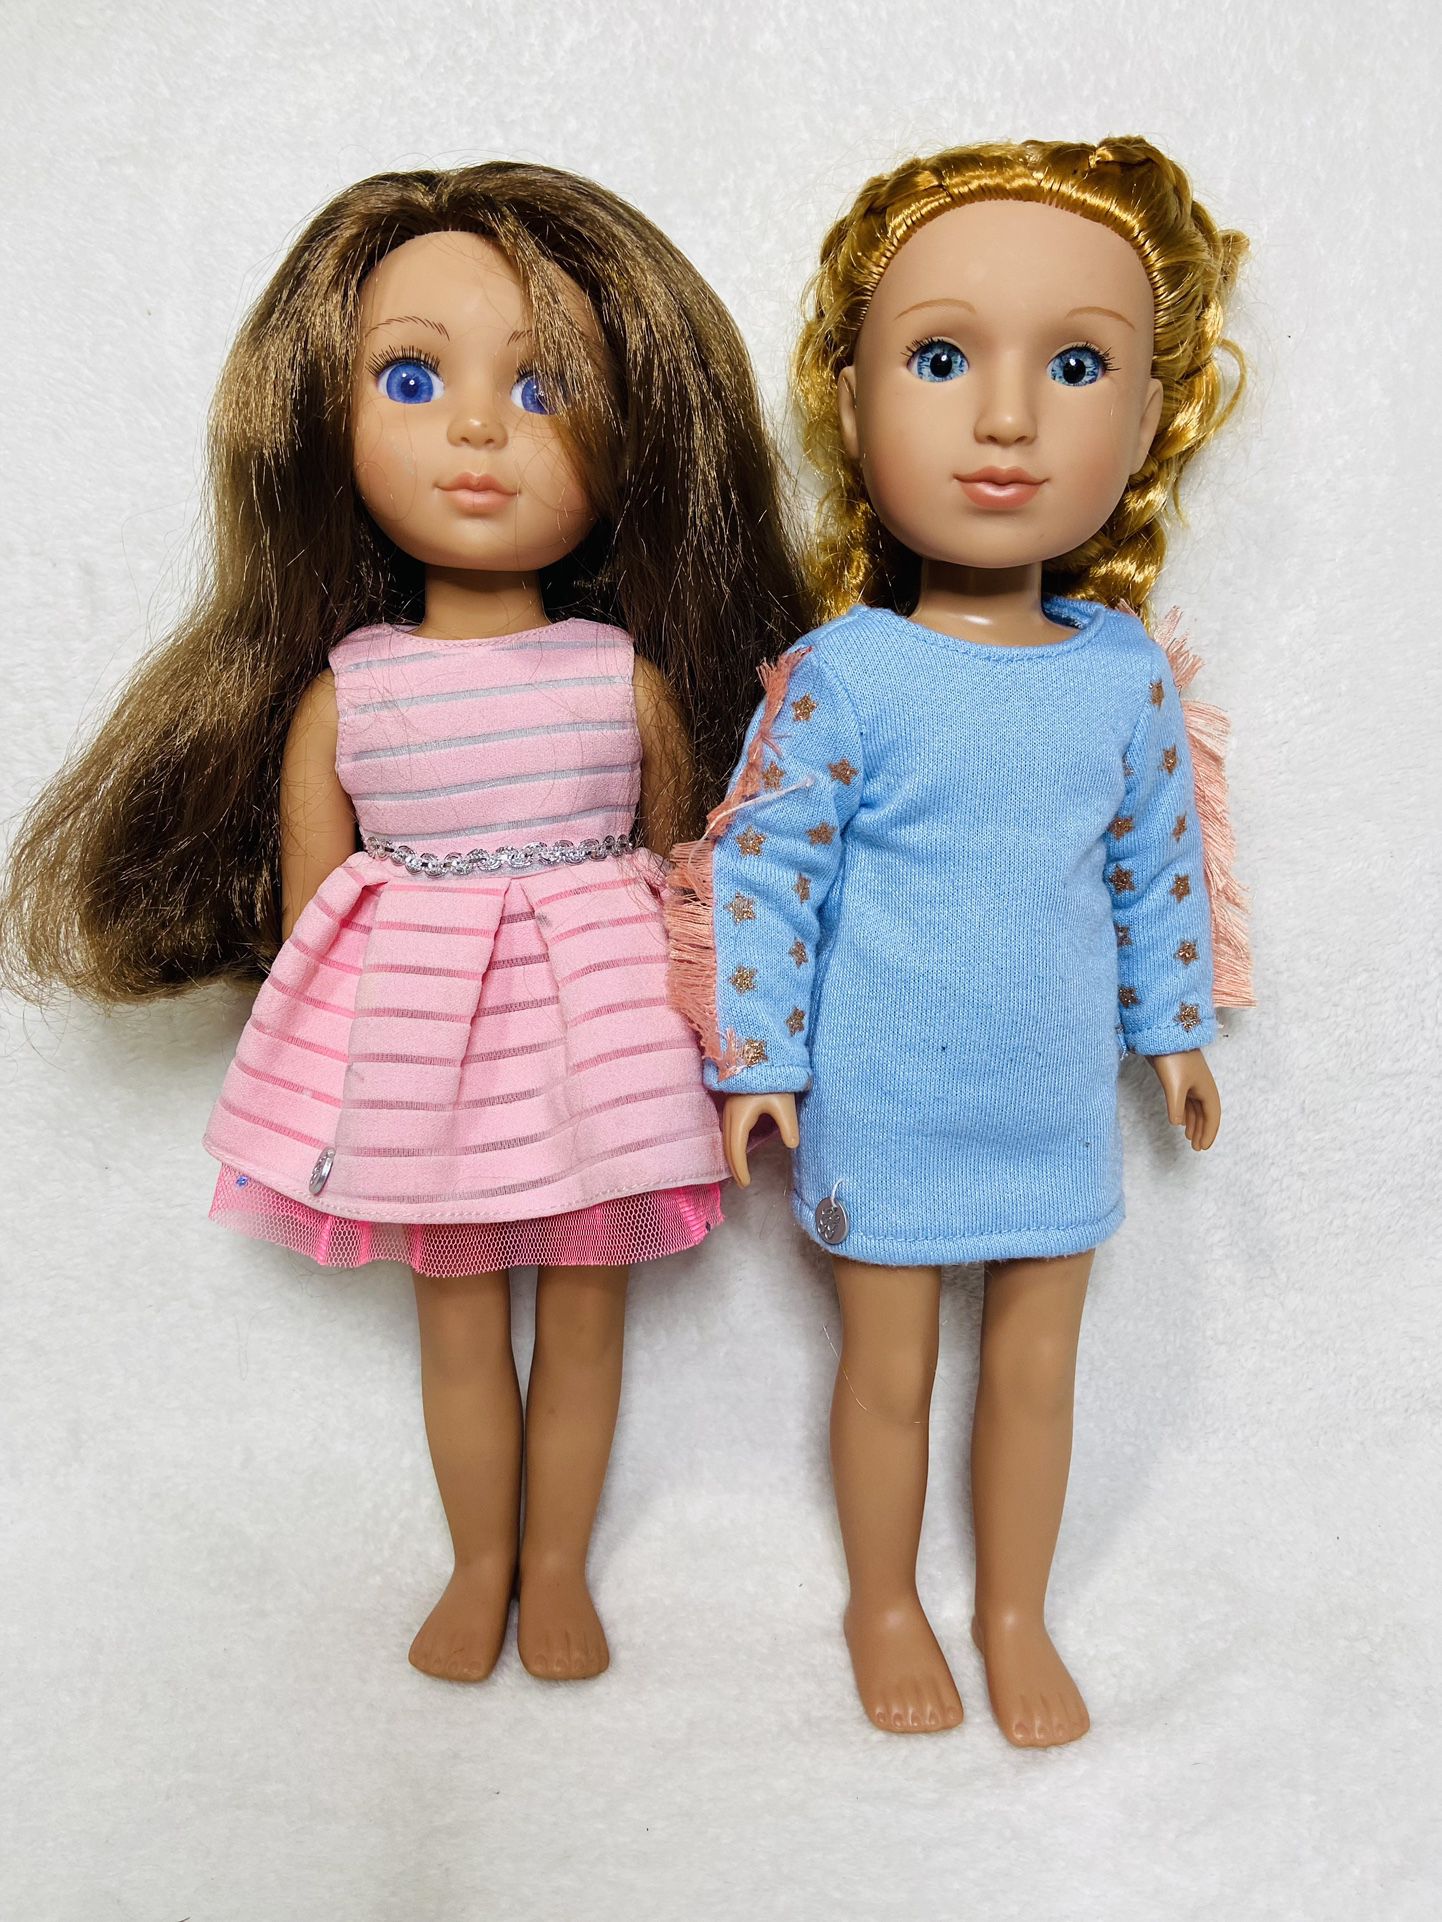 14” Glitter Girls Dolls Blonde Brunette Dress Up Dolls